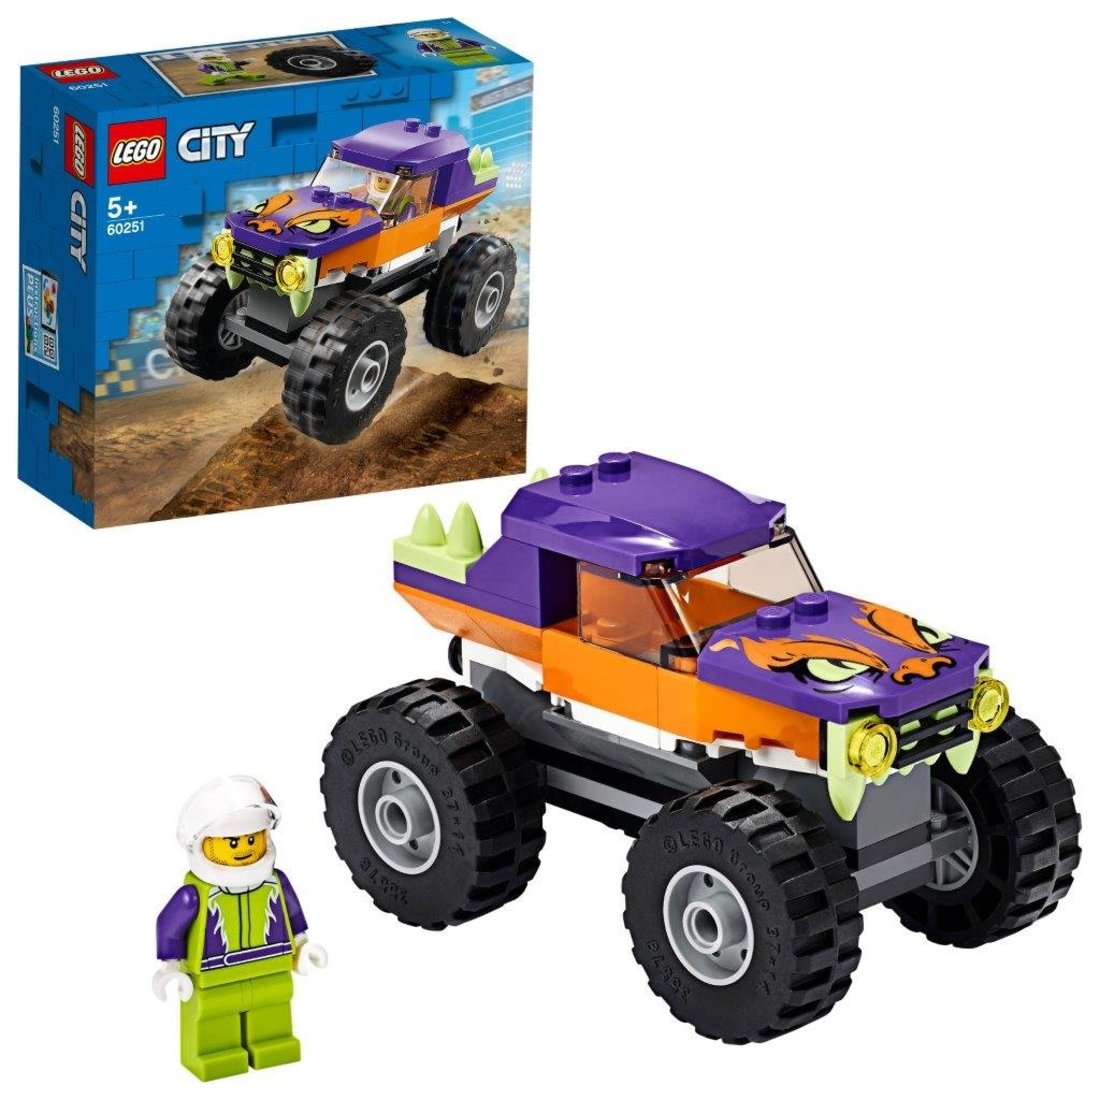 Констр-р LEGO City Great Vehicles Монстр-трак